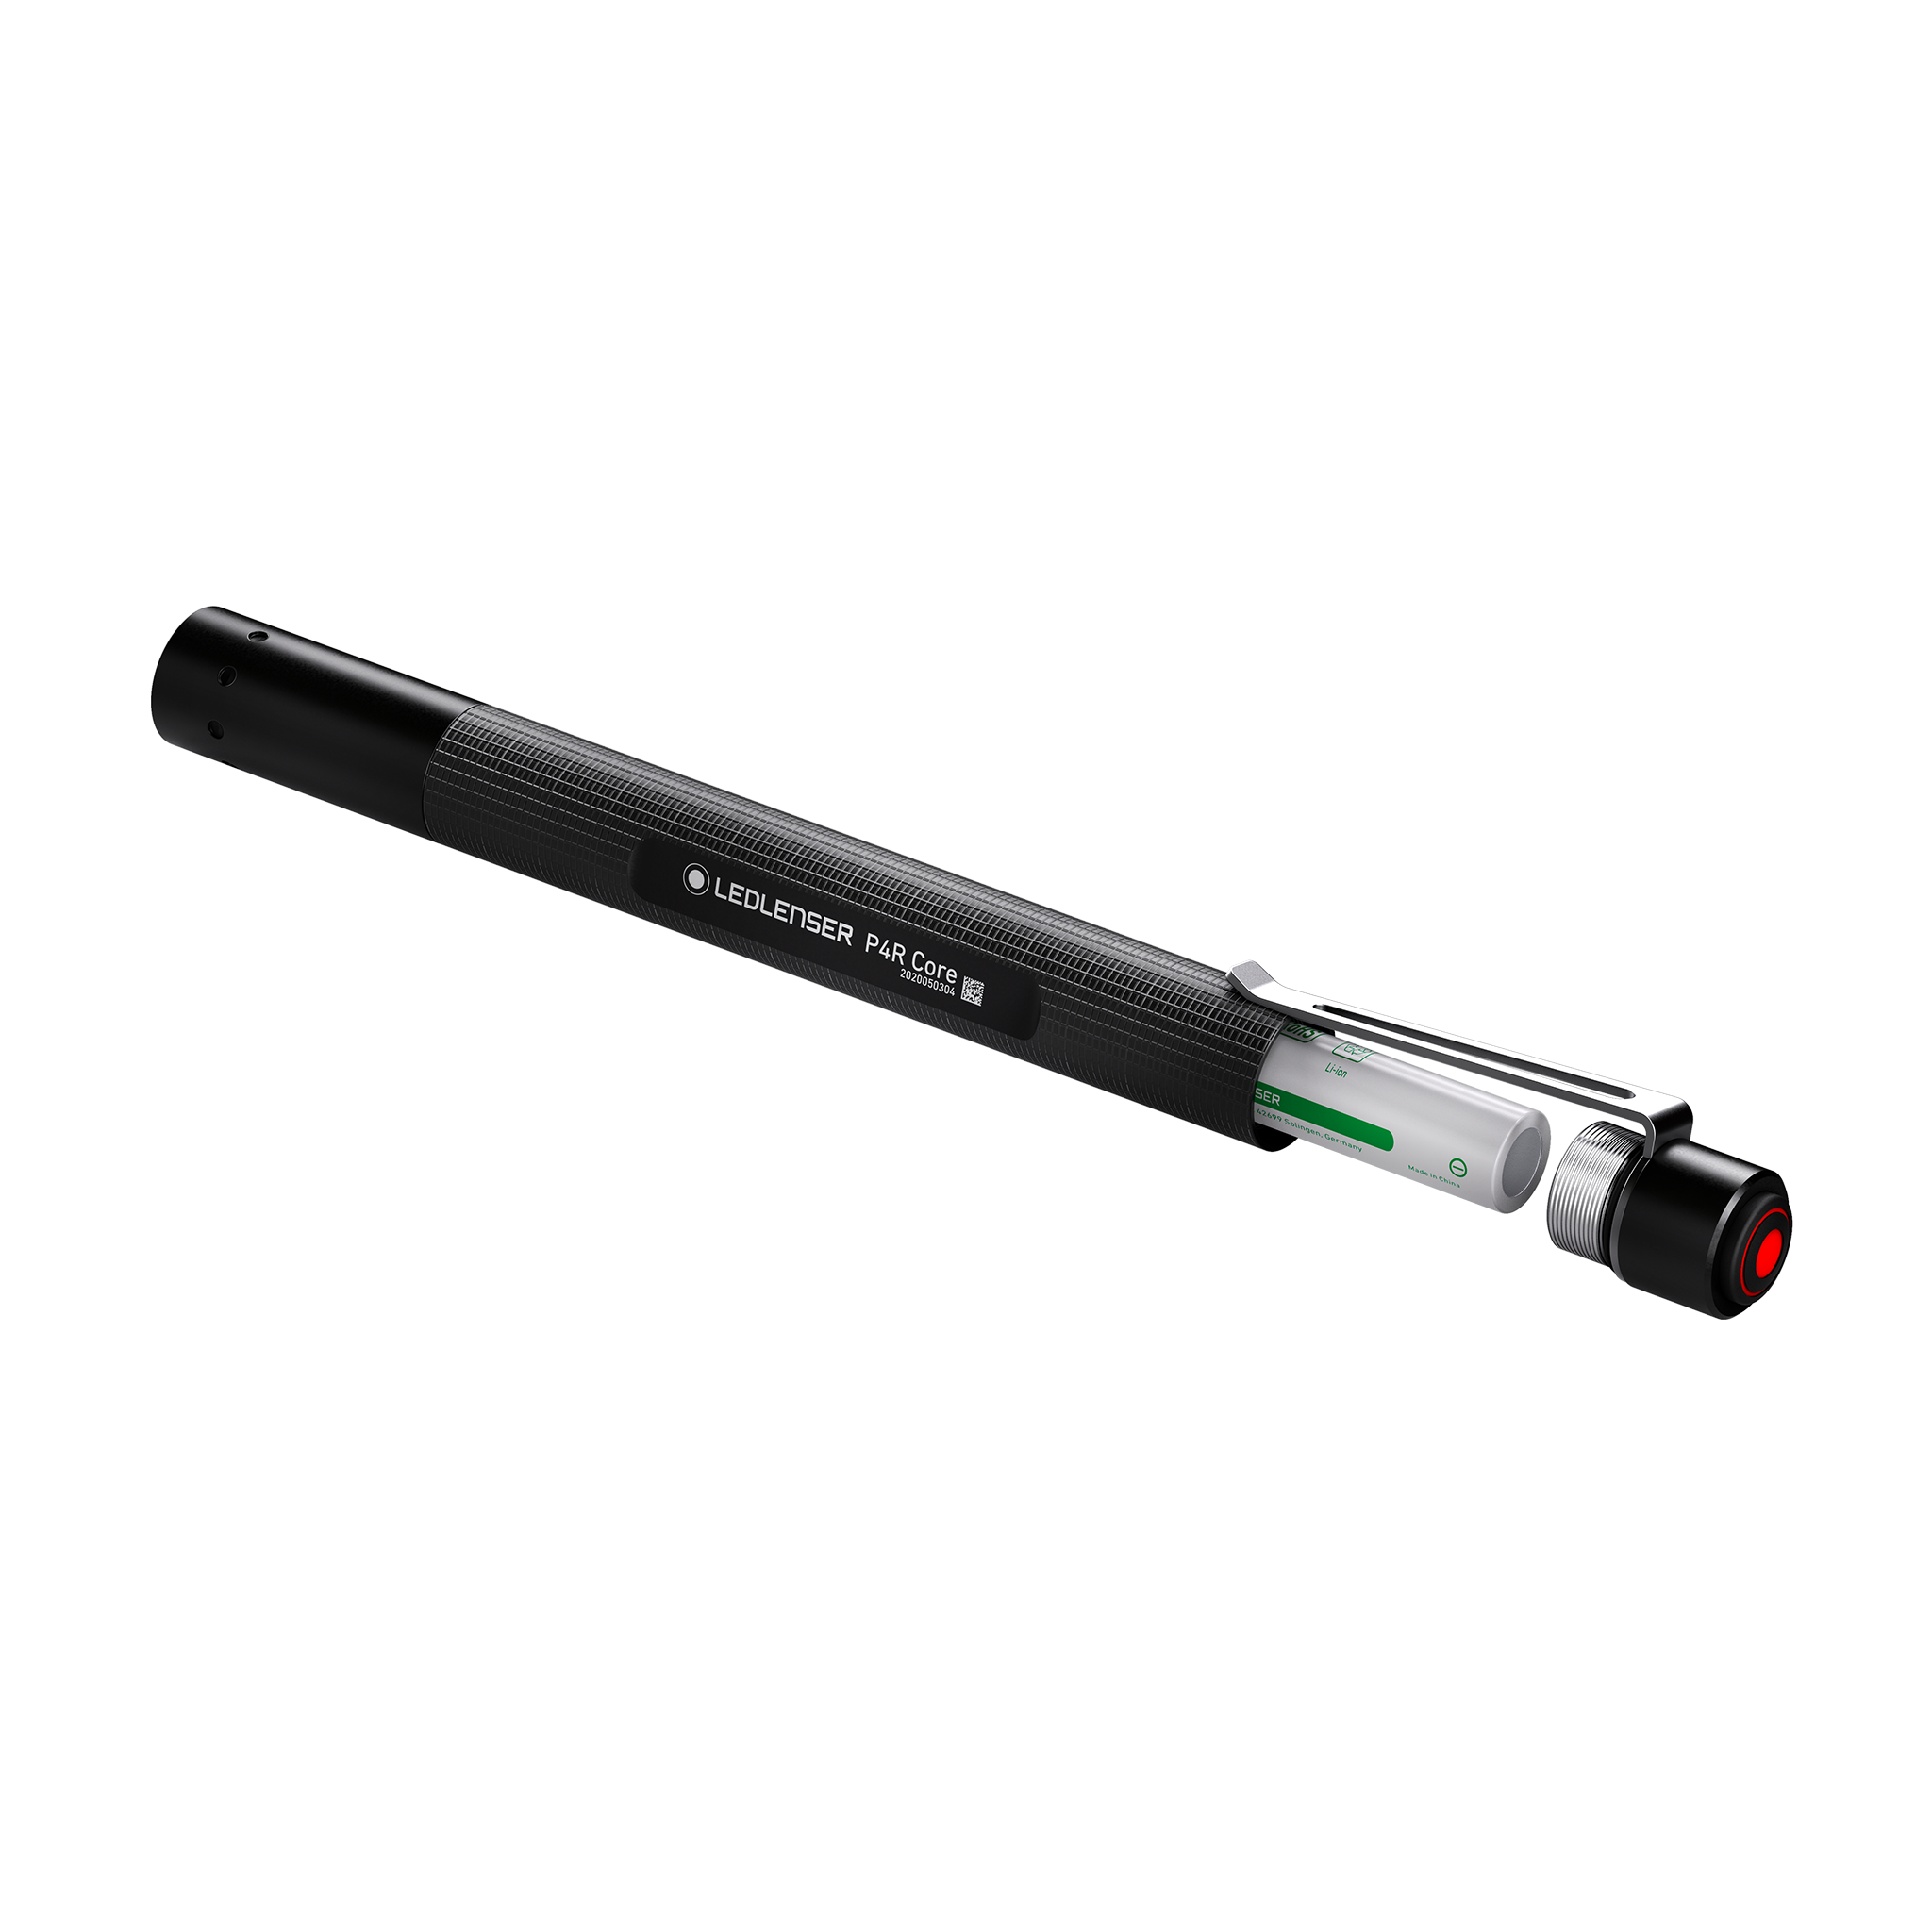  Ledlenser, P2R Core Rechargeable Pen Light, 120 Lumens,  Advanced Focus System : Industrial & Scientific